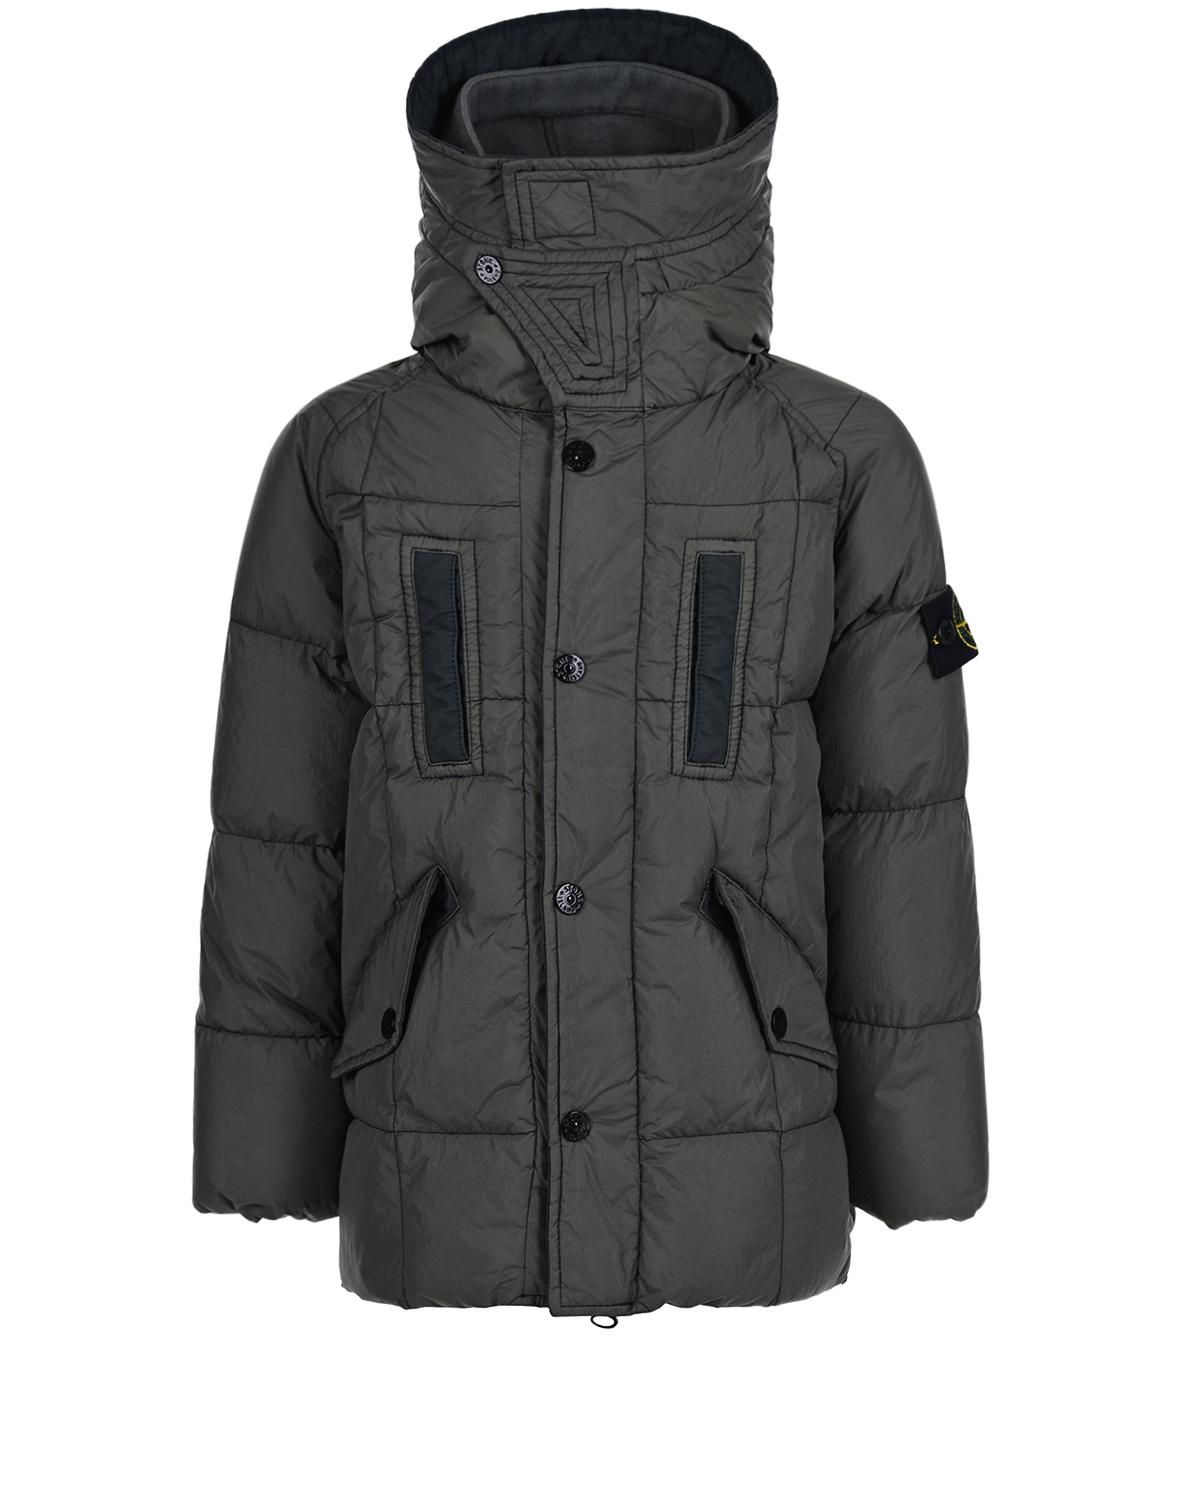 Удлиненная серая куртка с капюшоном Stone Island детская, размер 92, цвет серый - фото 1